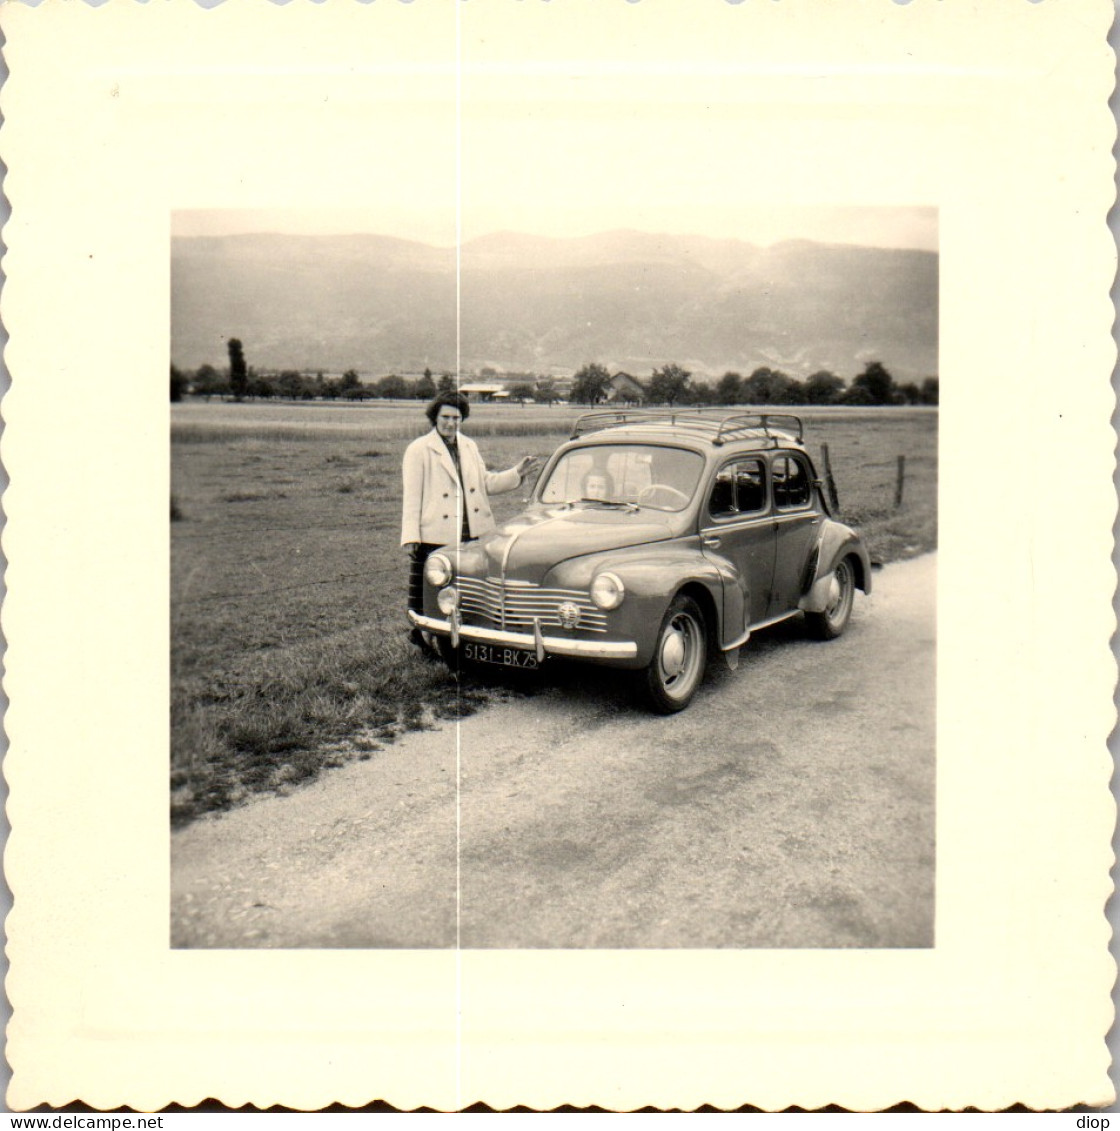 Photographie Photo Vintage Snapshot Amateur Automobile Voiture 4 Chevaux Jura  - Automobiles